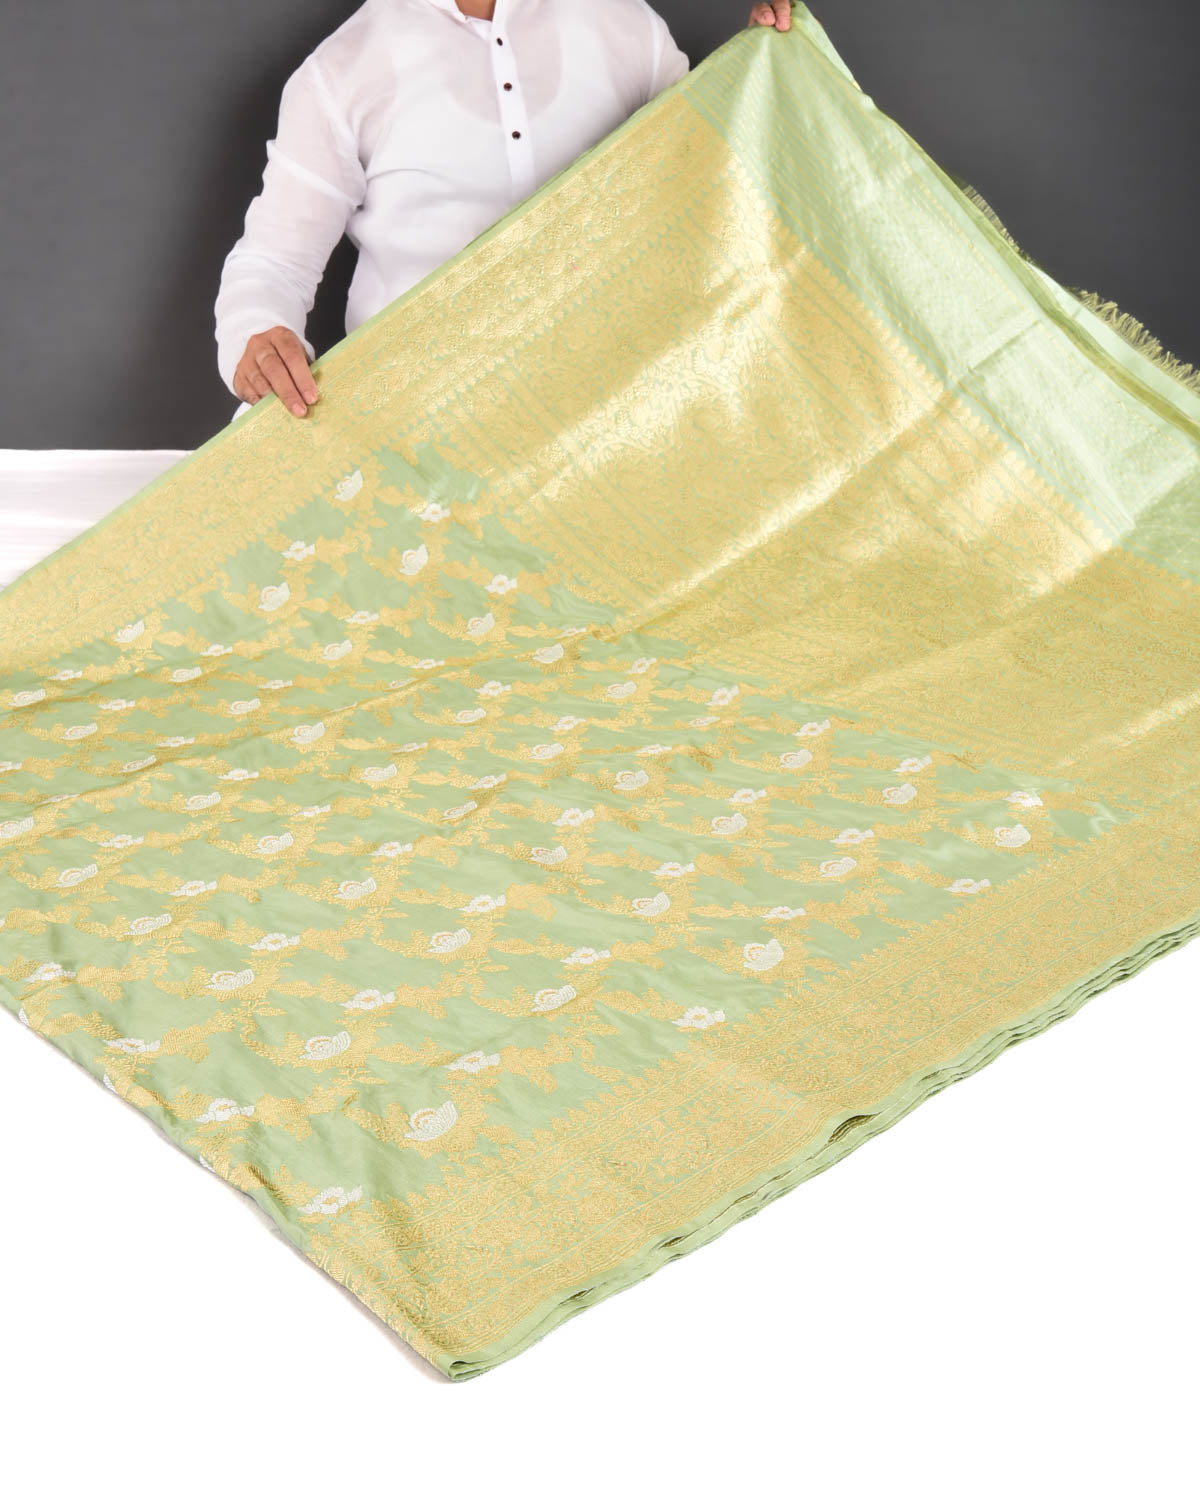 Laurel Green Banarasi Gold & Silver Zari Alfi Floral Jaal Kadhuan Brocade Handwoven Katan Silk Saree - By HolyWeaves, Benares